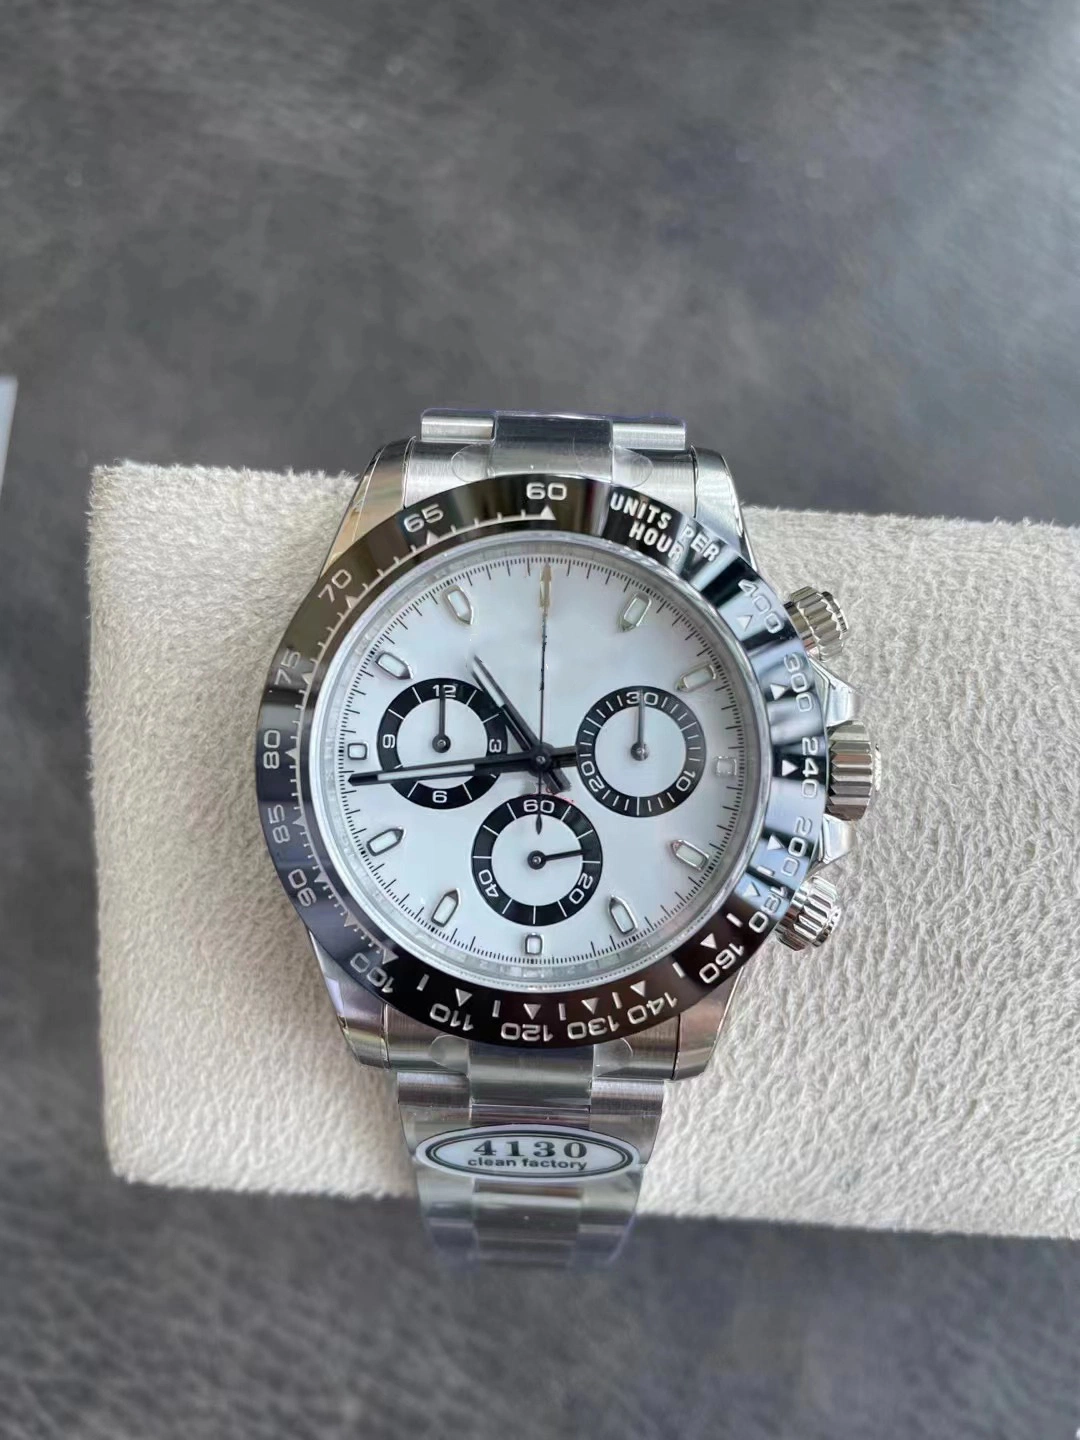 BT Noob Clean Factory Watch 5A Watch Super Clone 4130 Relógio de Cronógrafo de Desporto Movement Relógio mecânico Relógio de aço inoxidável 904L Panda Veja o anel em cerâmica preto